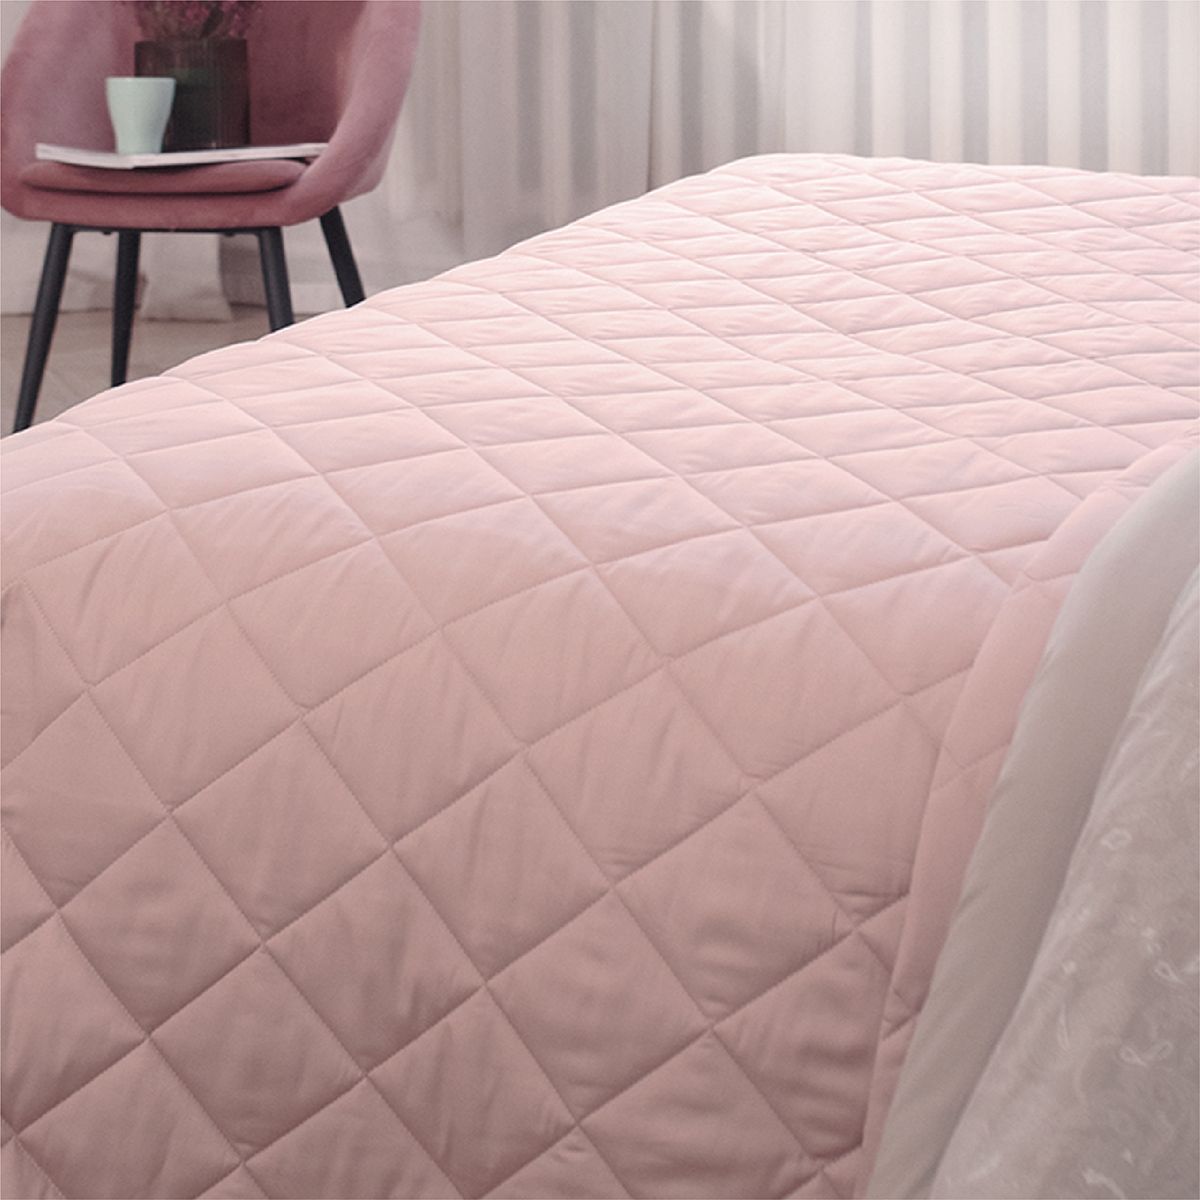 Перламутровое покрывало. Покрывало жемчужного цвета. Хлопковое одеяло розовое. Жемчужное покрывало на кровать. Покрывало la prima.